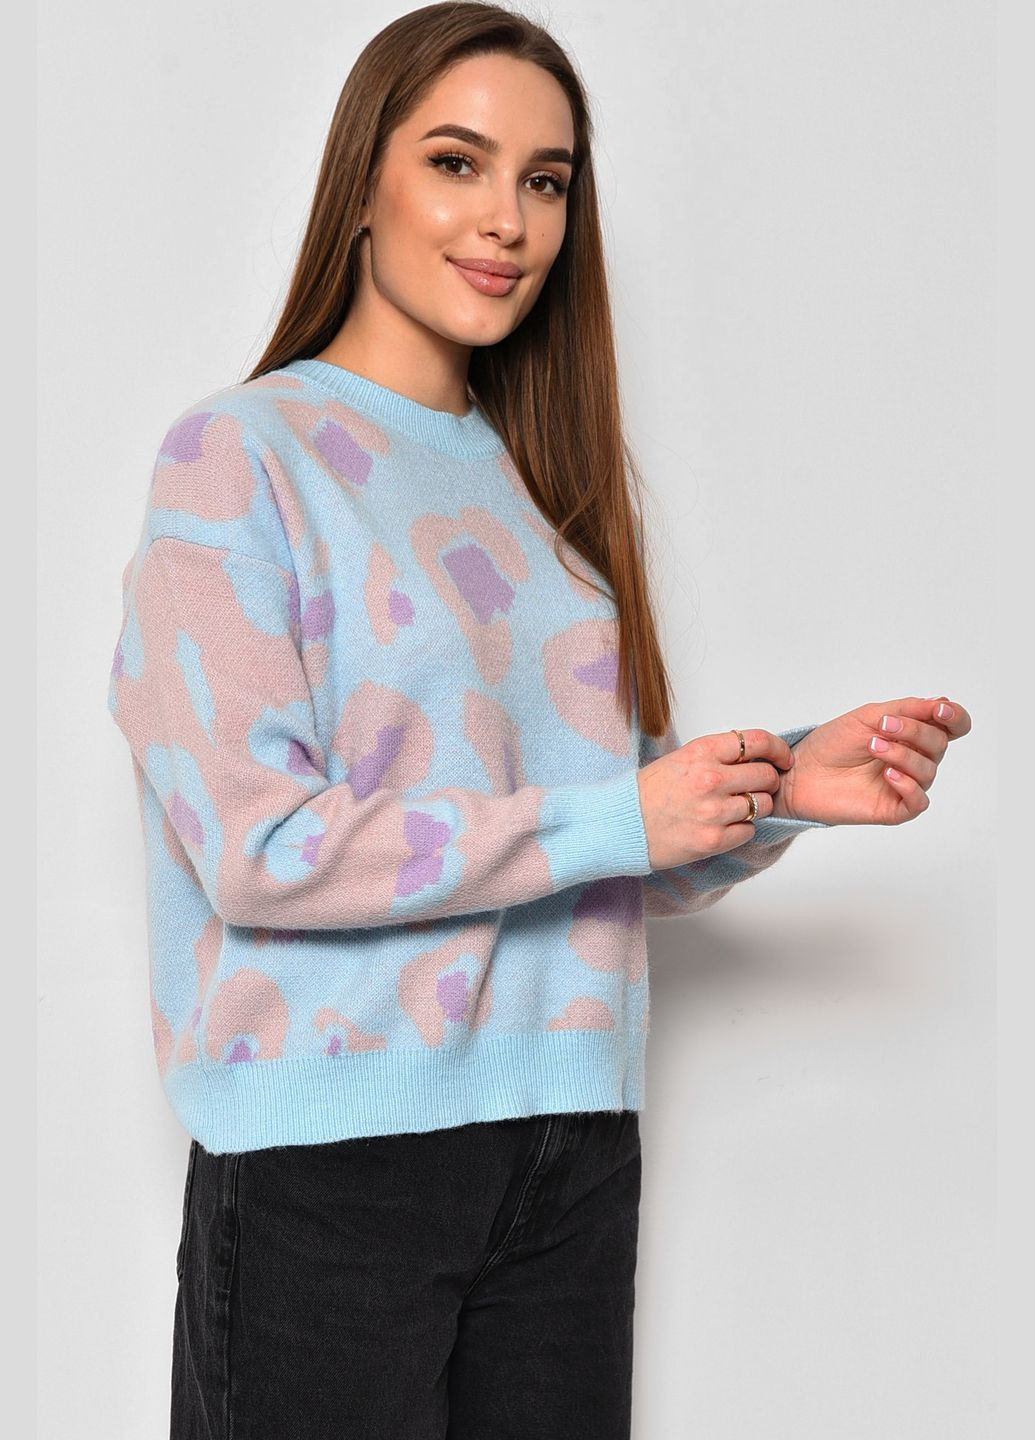 Голубой зимний свитер женский с принтом голубого цвета пуловер Let's Shop